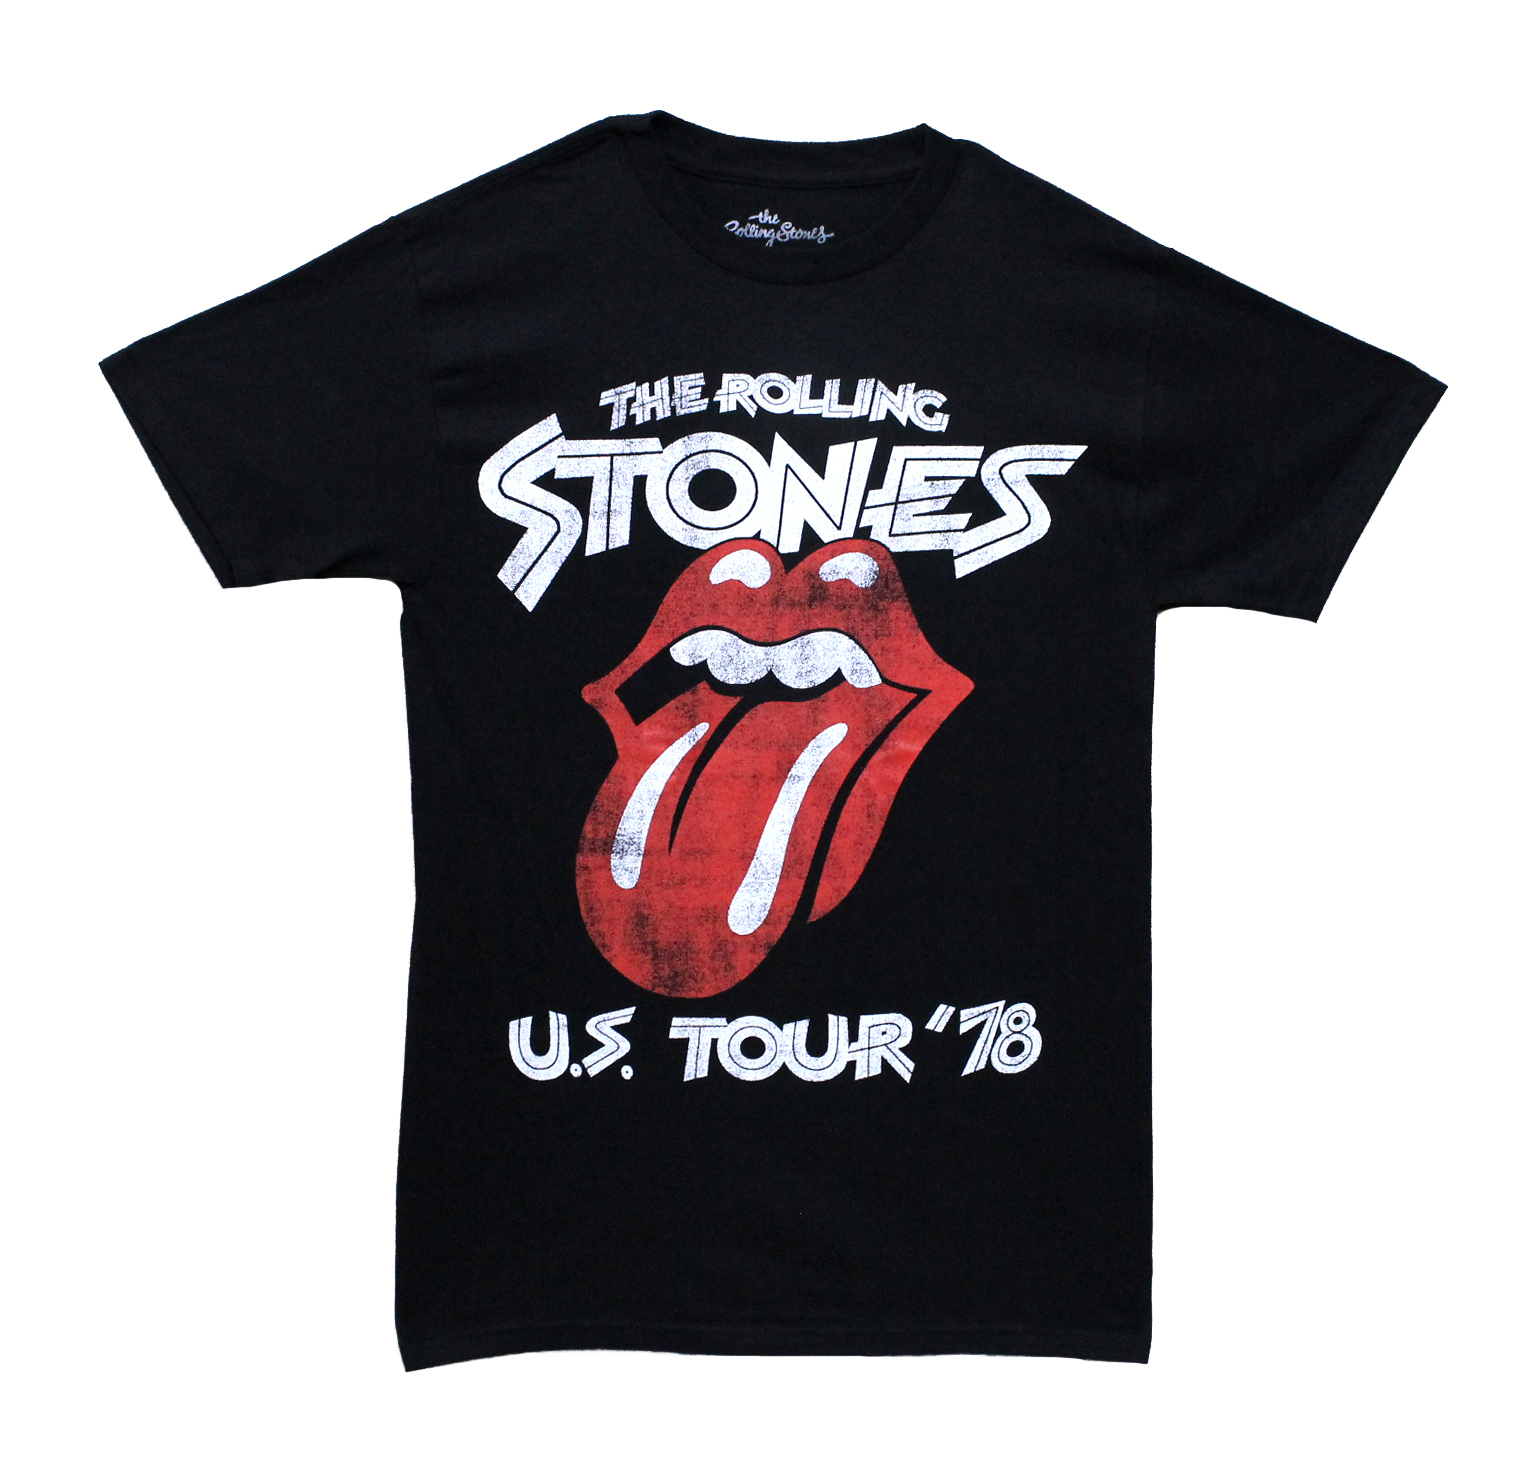 Rolling Stones US Tour 78 - Black - Vancouver Rock Shop